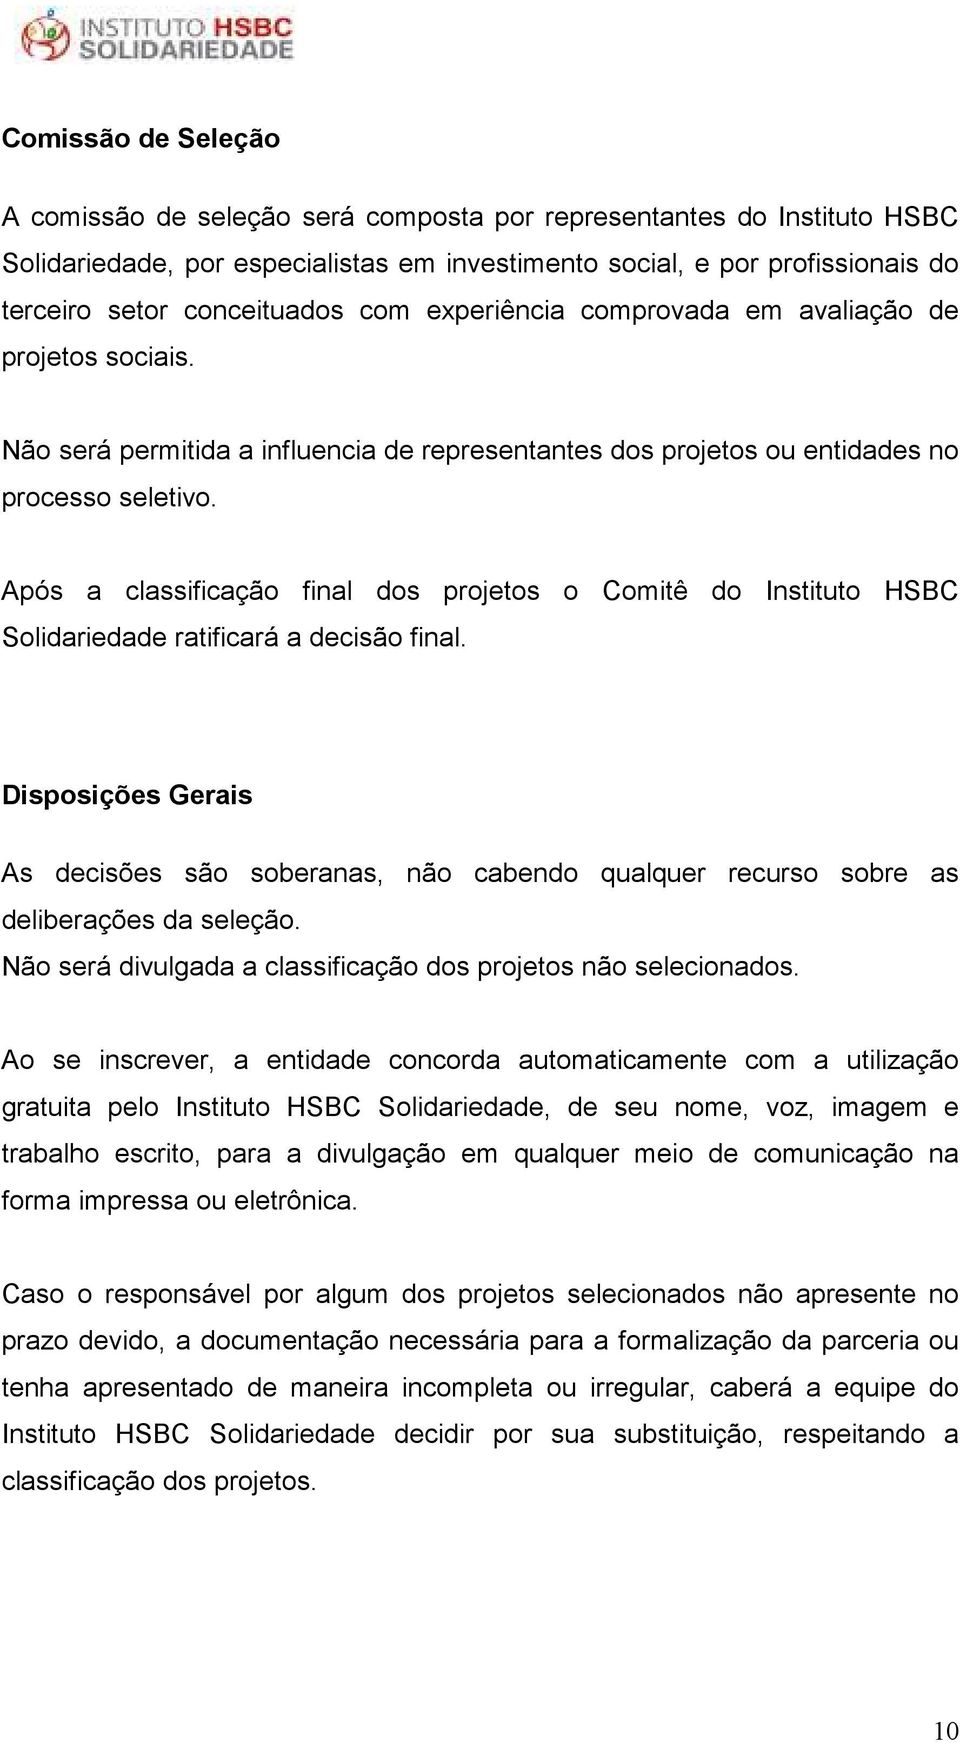 Após a classificação final dos projetos o Comitê do Instituto HSBC Solidariedade ratificará a decisão final.